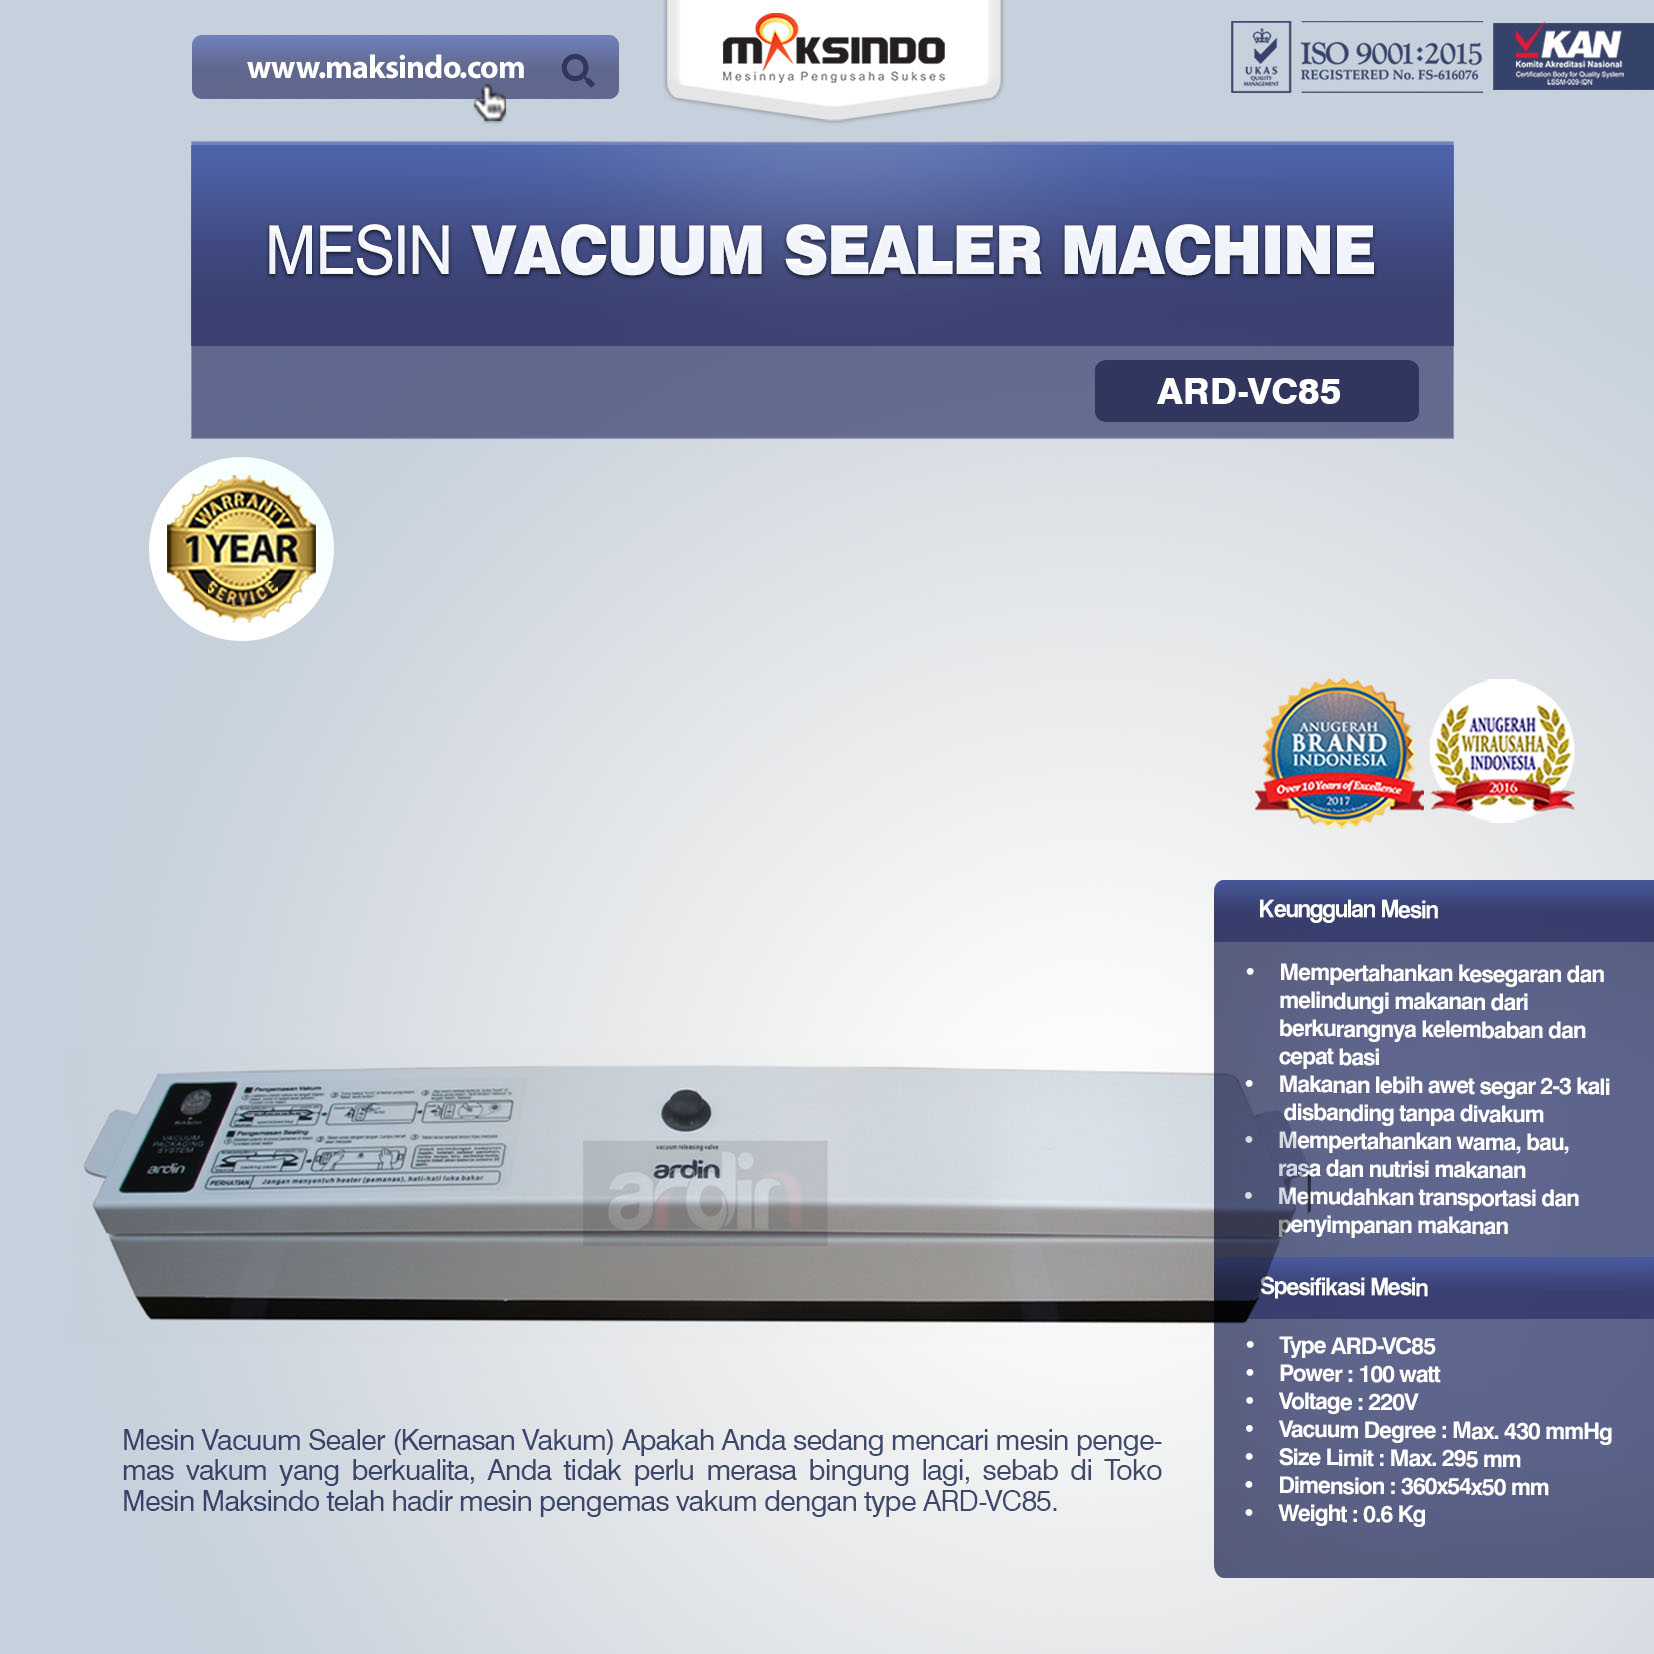 Jual Mesin Vacuum Sealer Machine ARD-VC85 di Solo